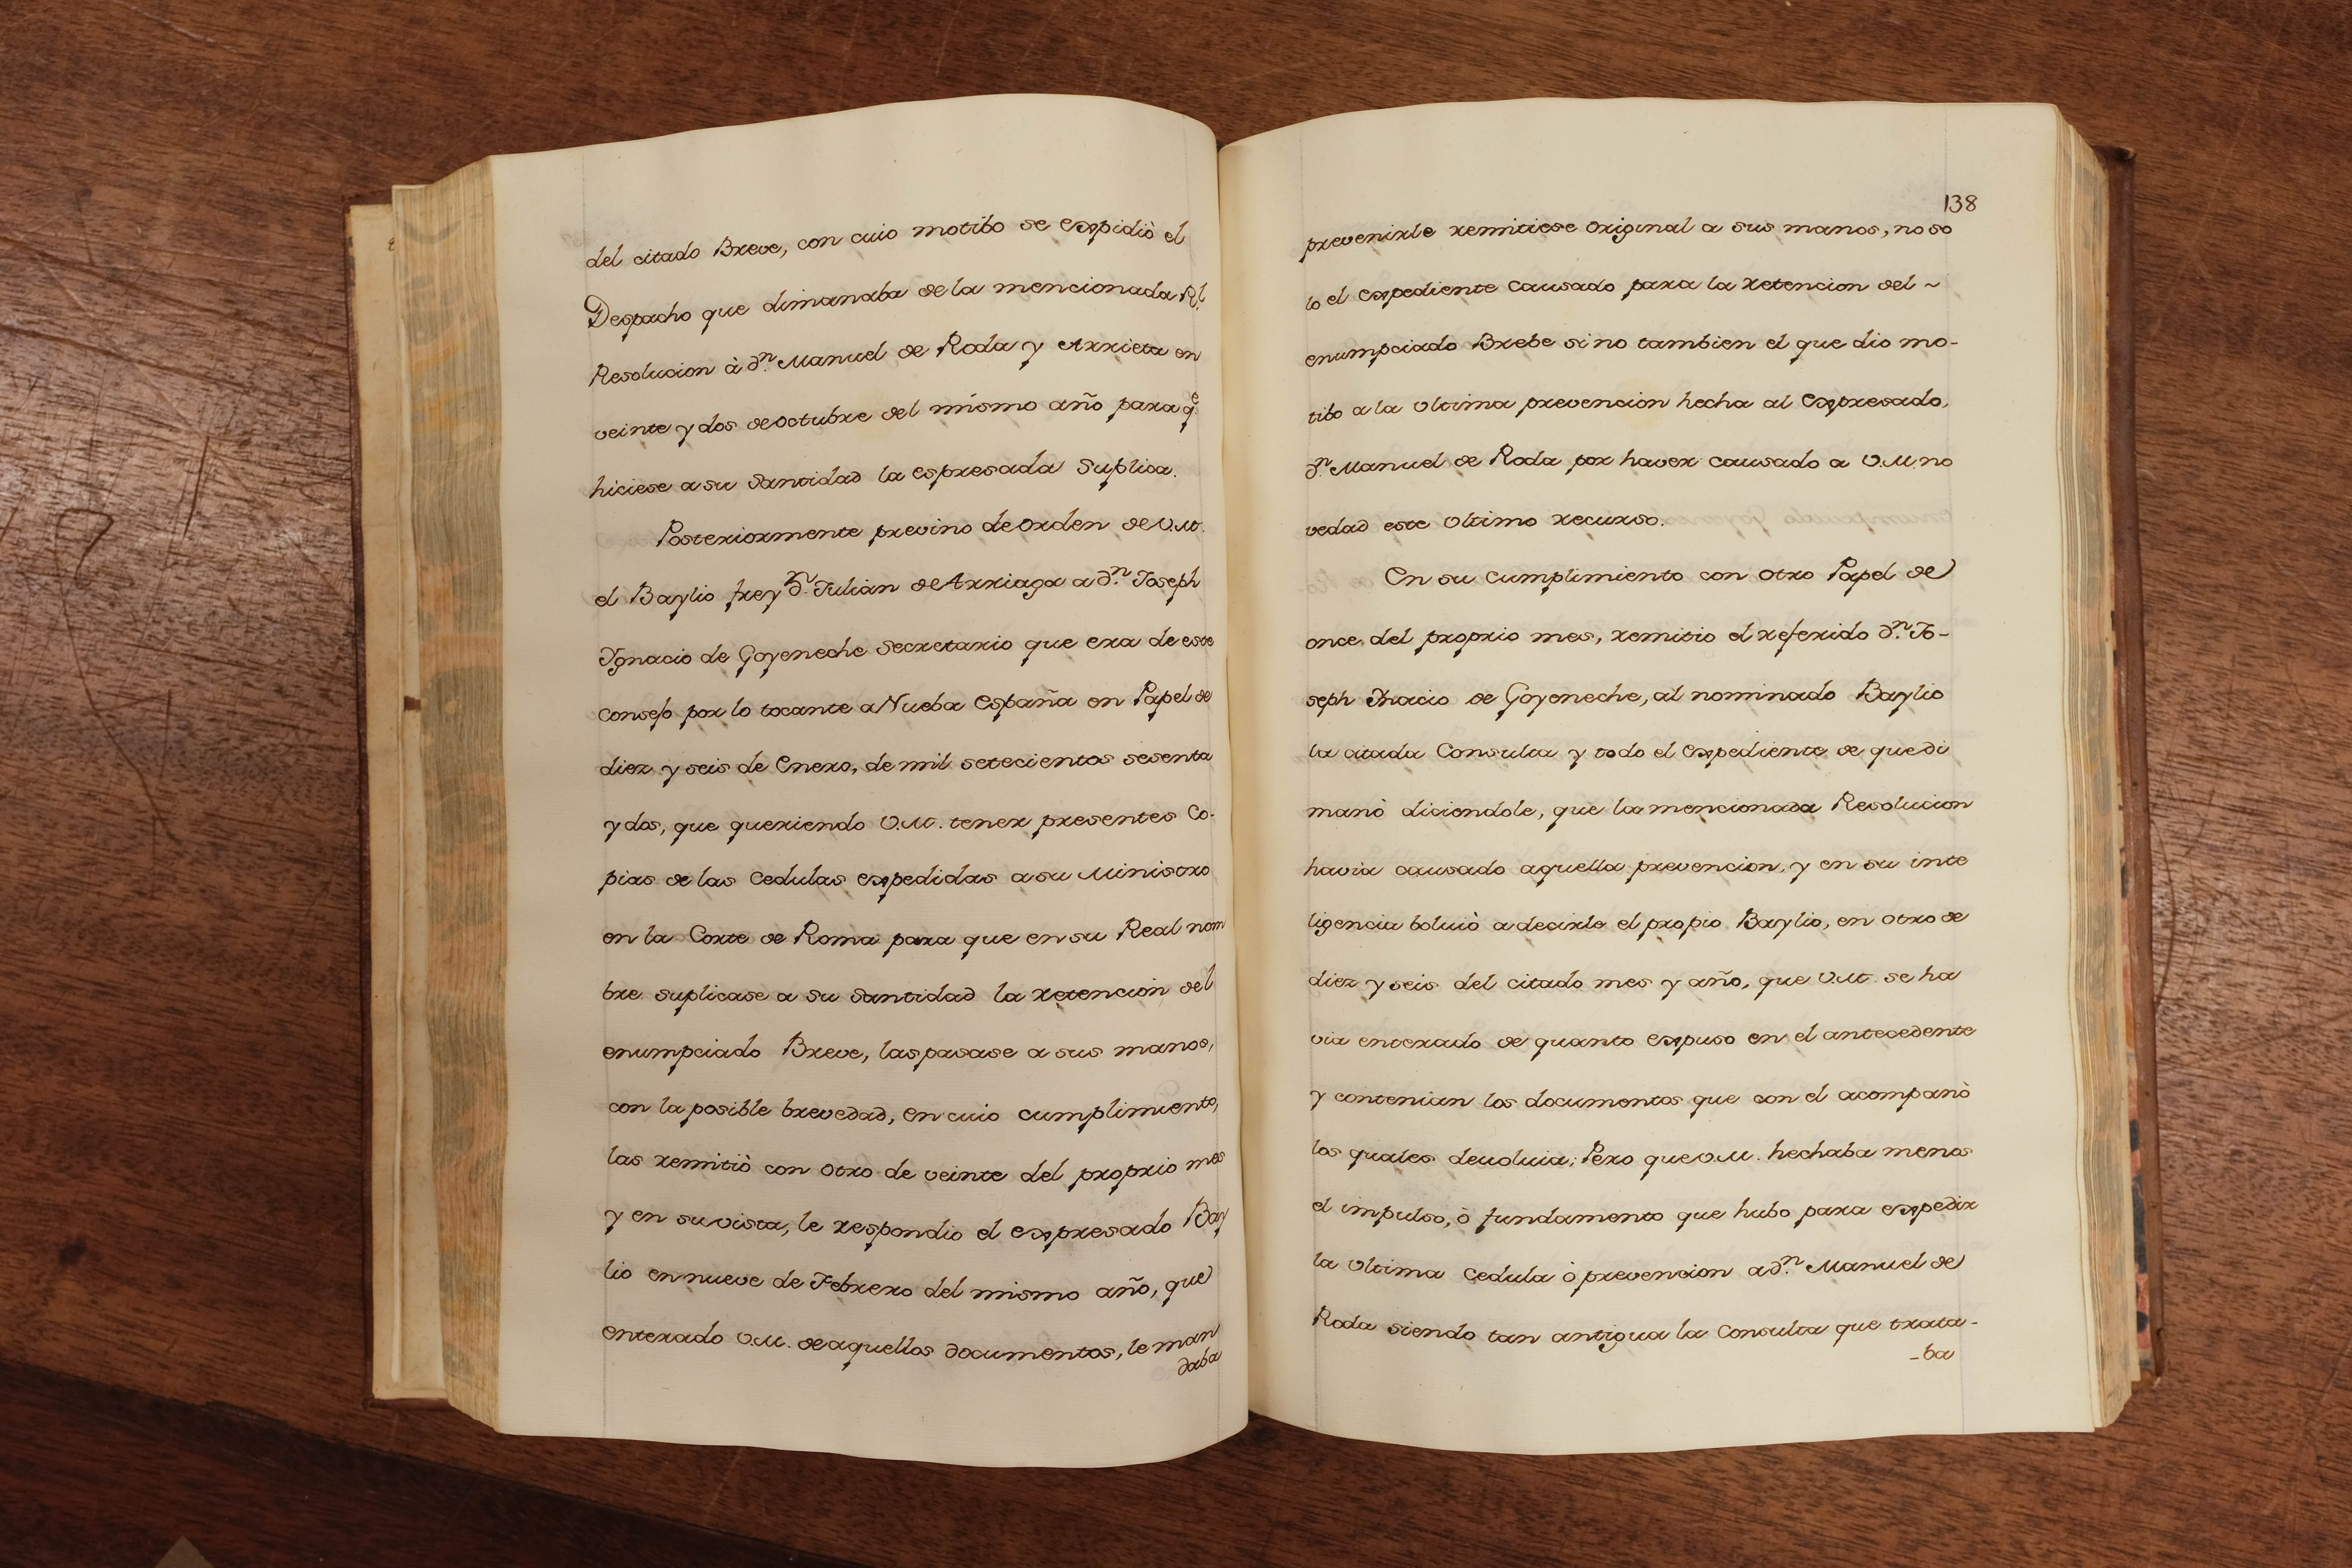 Coleccion de Consultas. Bound volume of 42 manuscript consultations, 1767 - Image 24 of 27